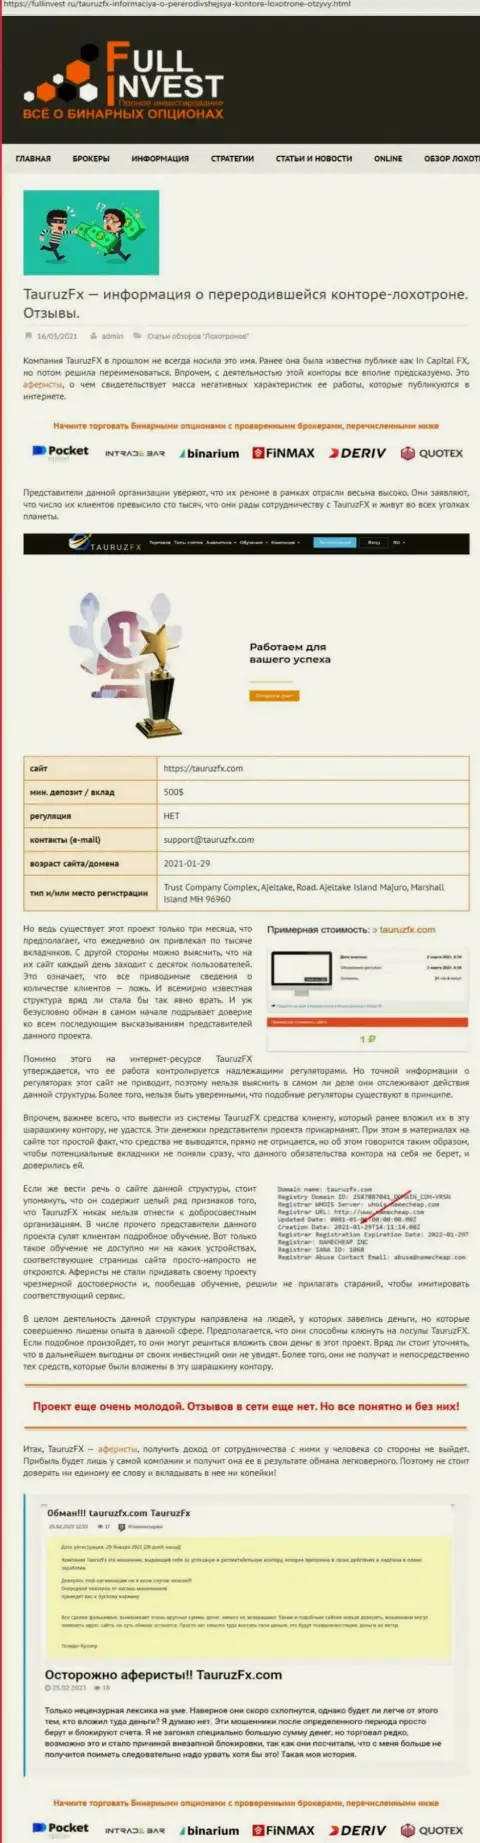 Лохотрон в сети !!! Обзорная статья о противозаконных проделках интернет лохотронщиков ТаурузФХ Ком